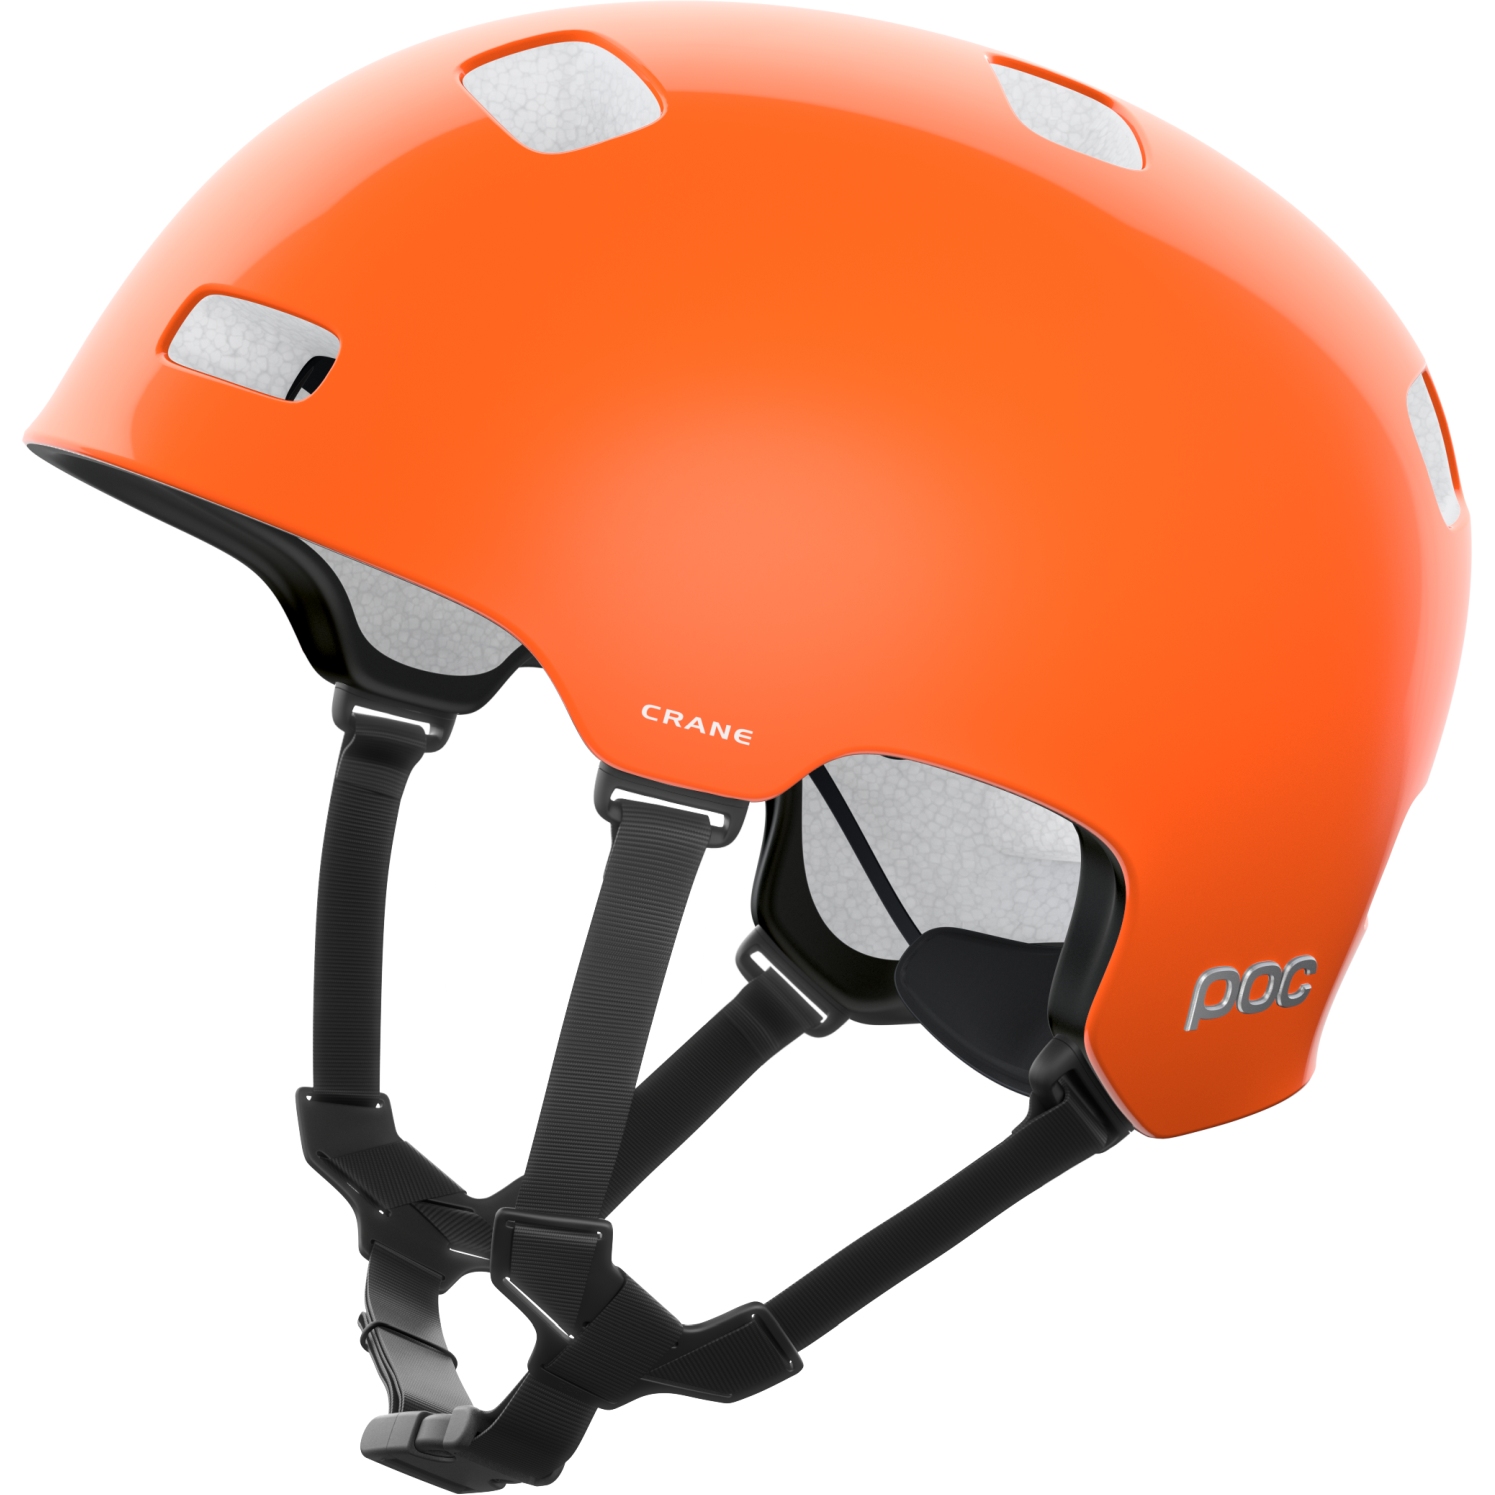 Produktbild von POC Crane MIPS Helm - 9050 Fluorescent Orange